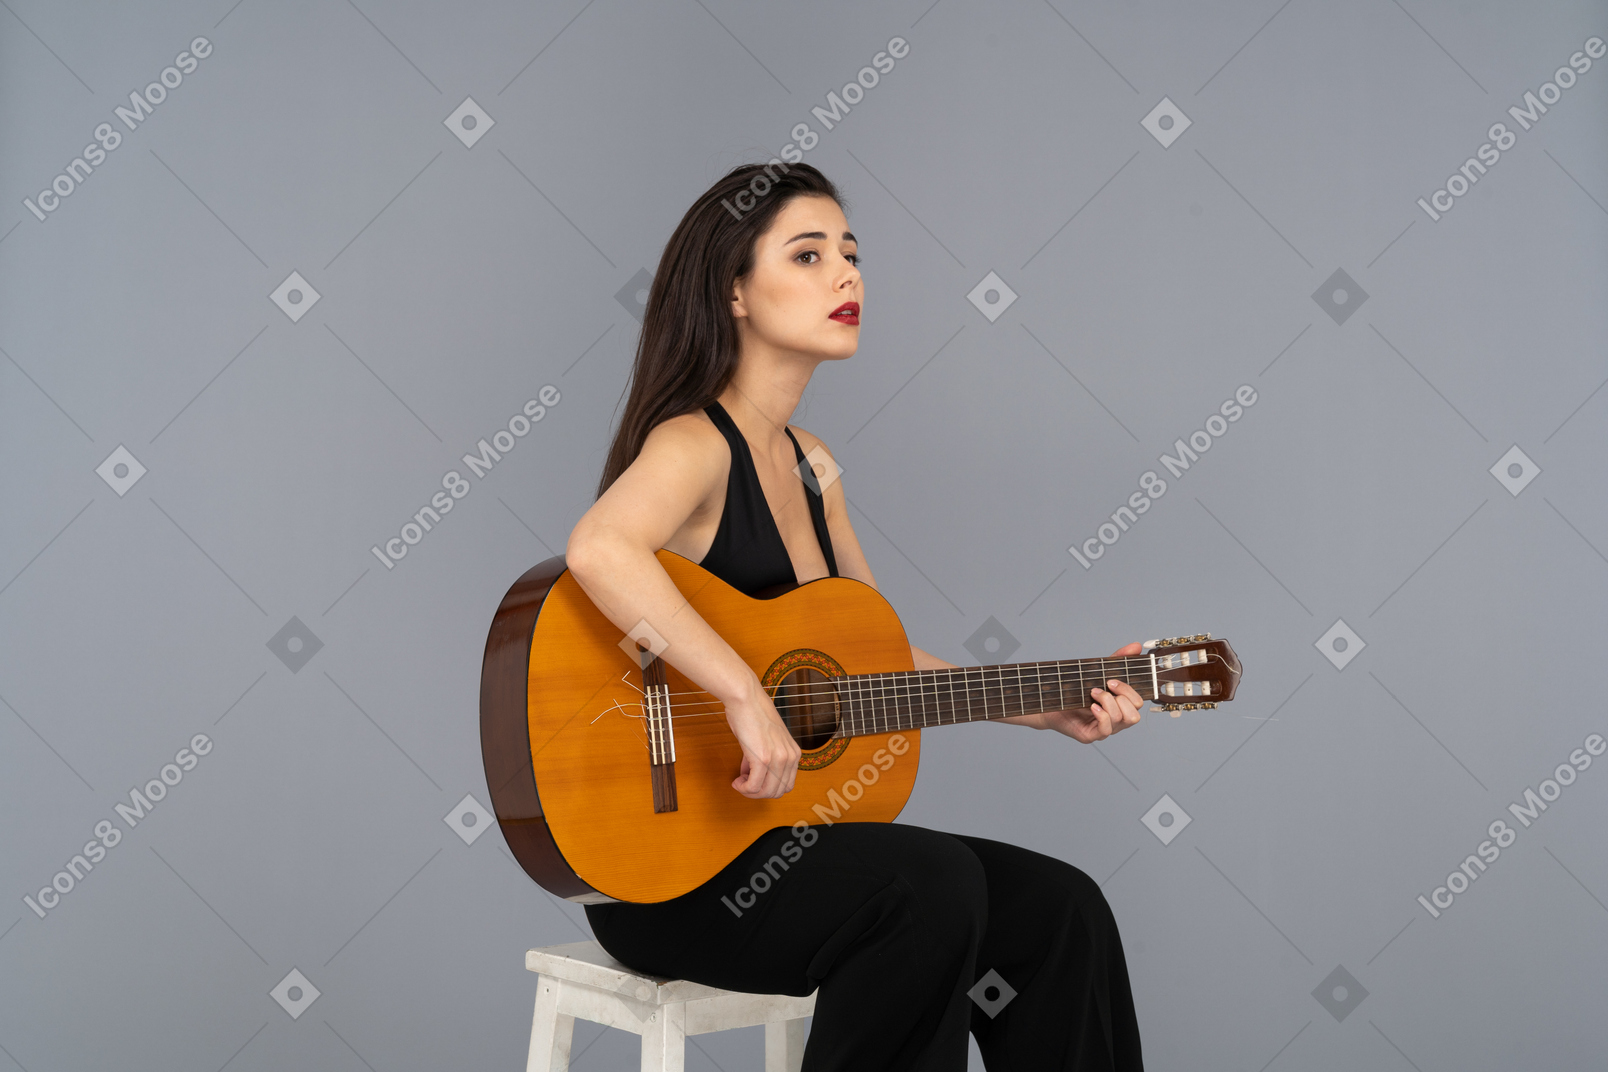 기타를 들고 검은 양복에 앉아있는 젊은 아가씨의 3/4보기